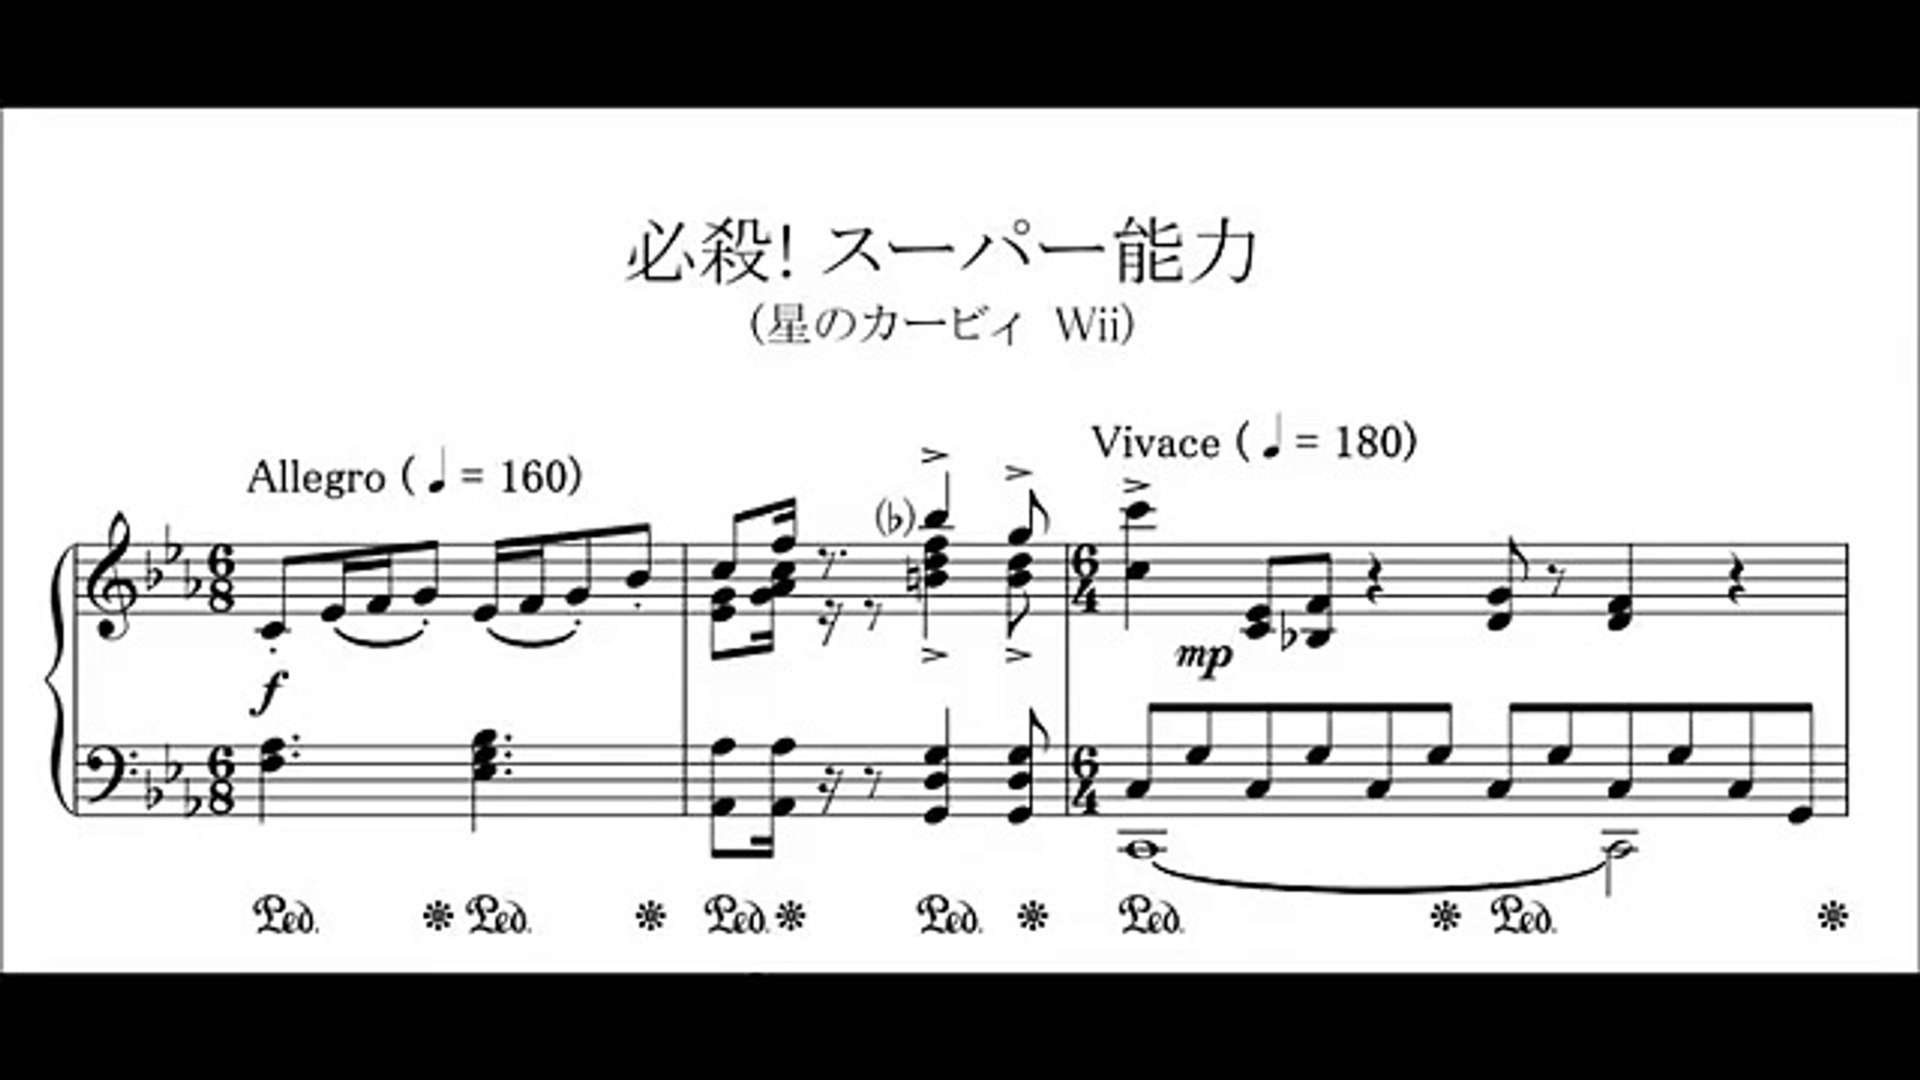 ピアノ楽譜 必殺 スーパー能力 星のカービィ Wii Piano Score Video Dailymotion